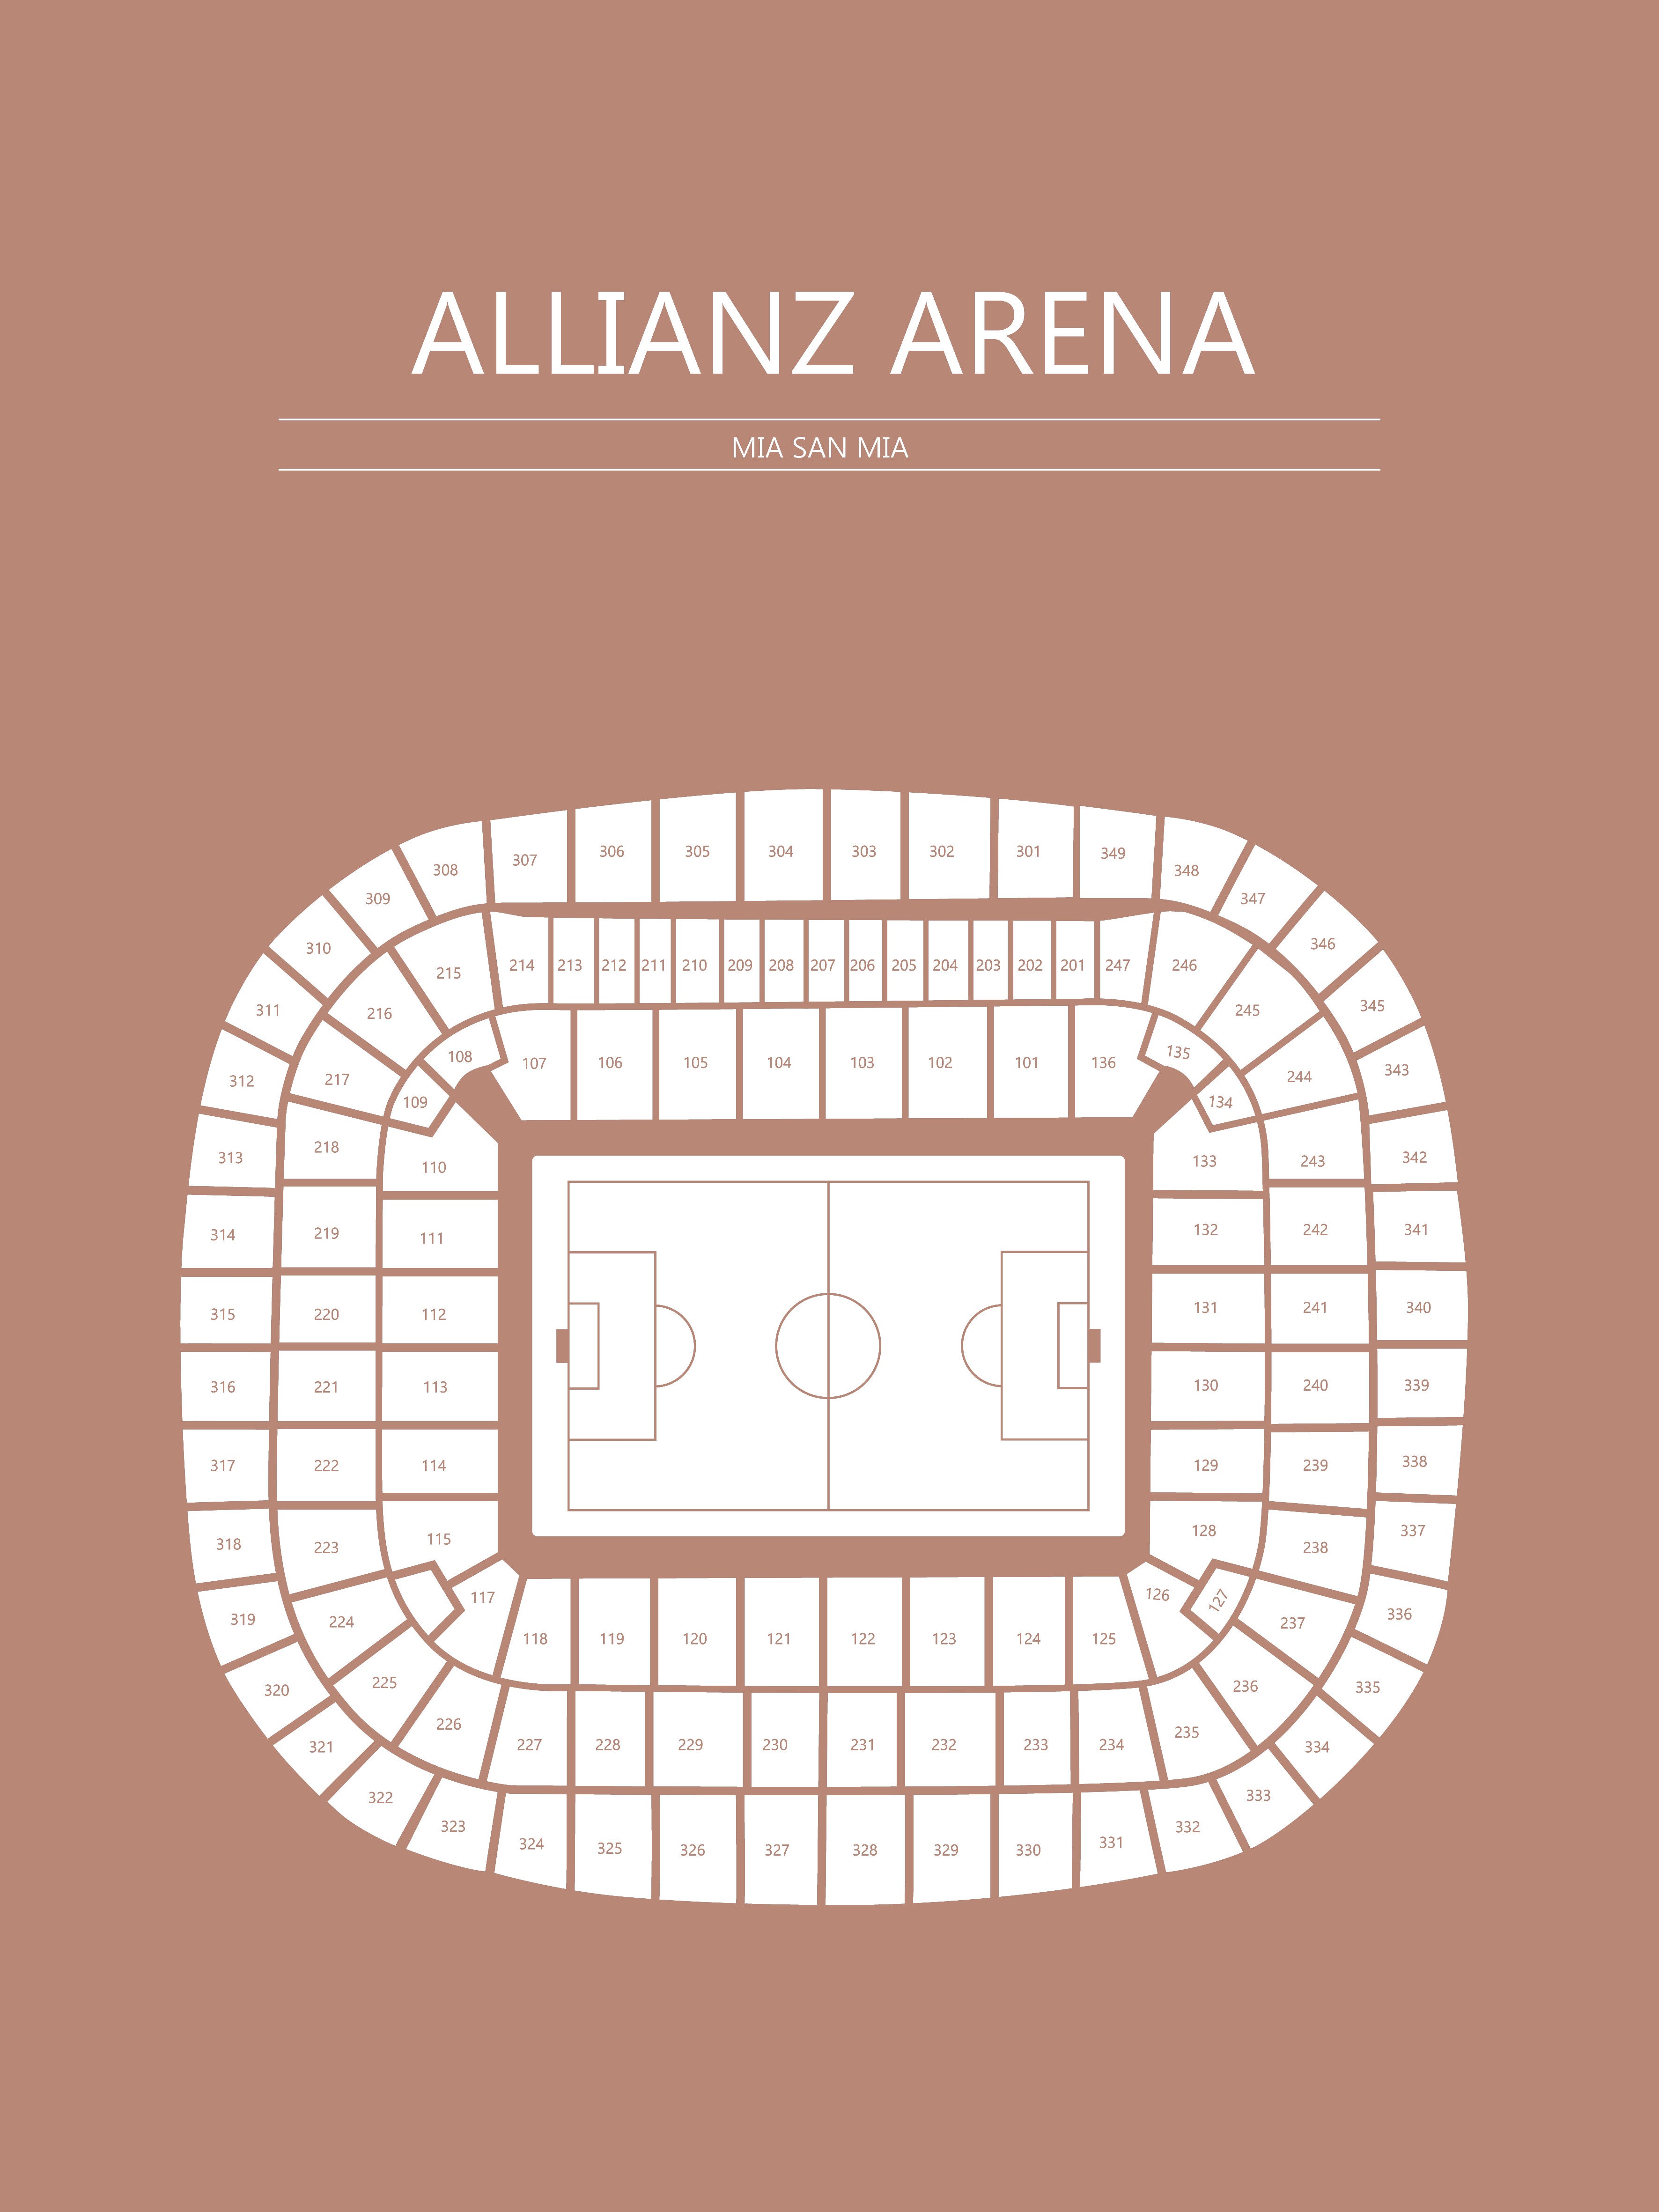 Fodbold plakat Bayern München Allianz Arena Sahara